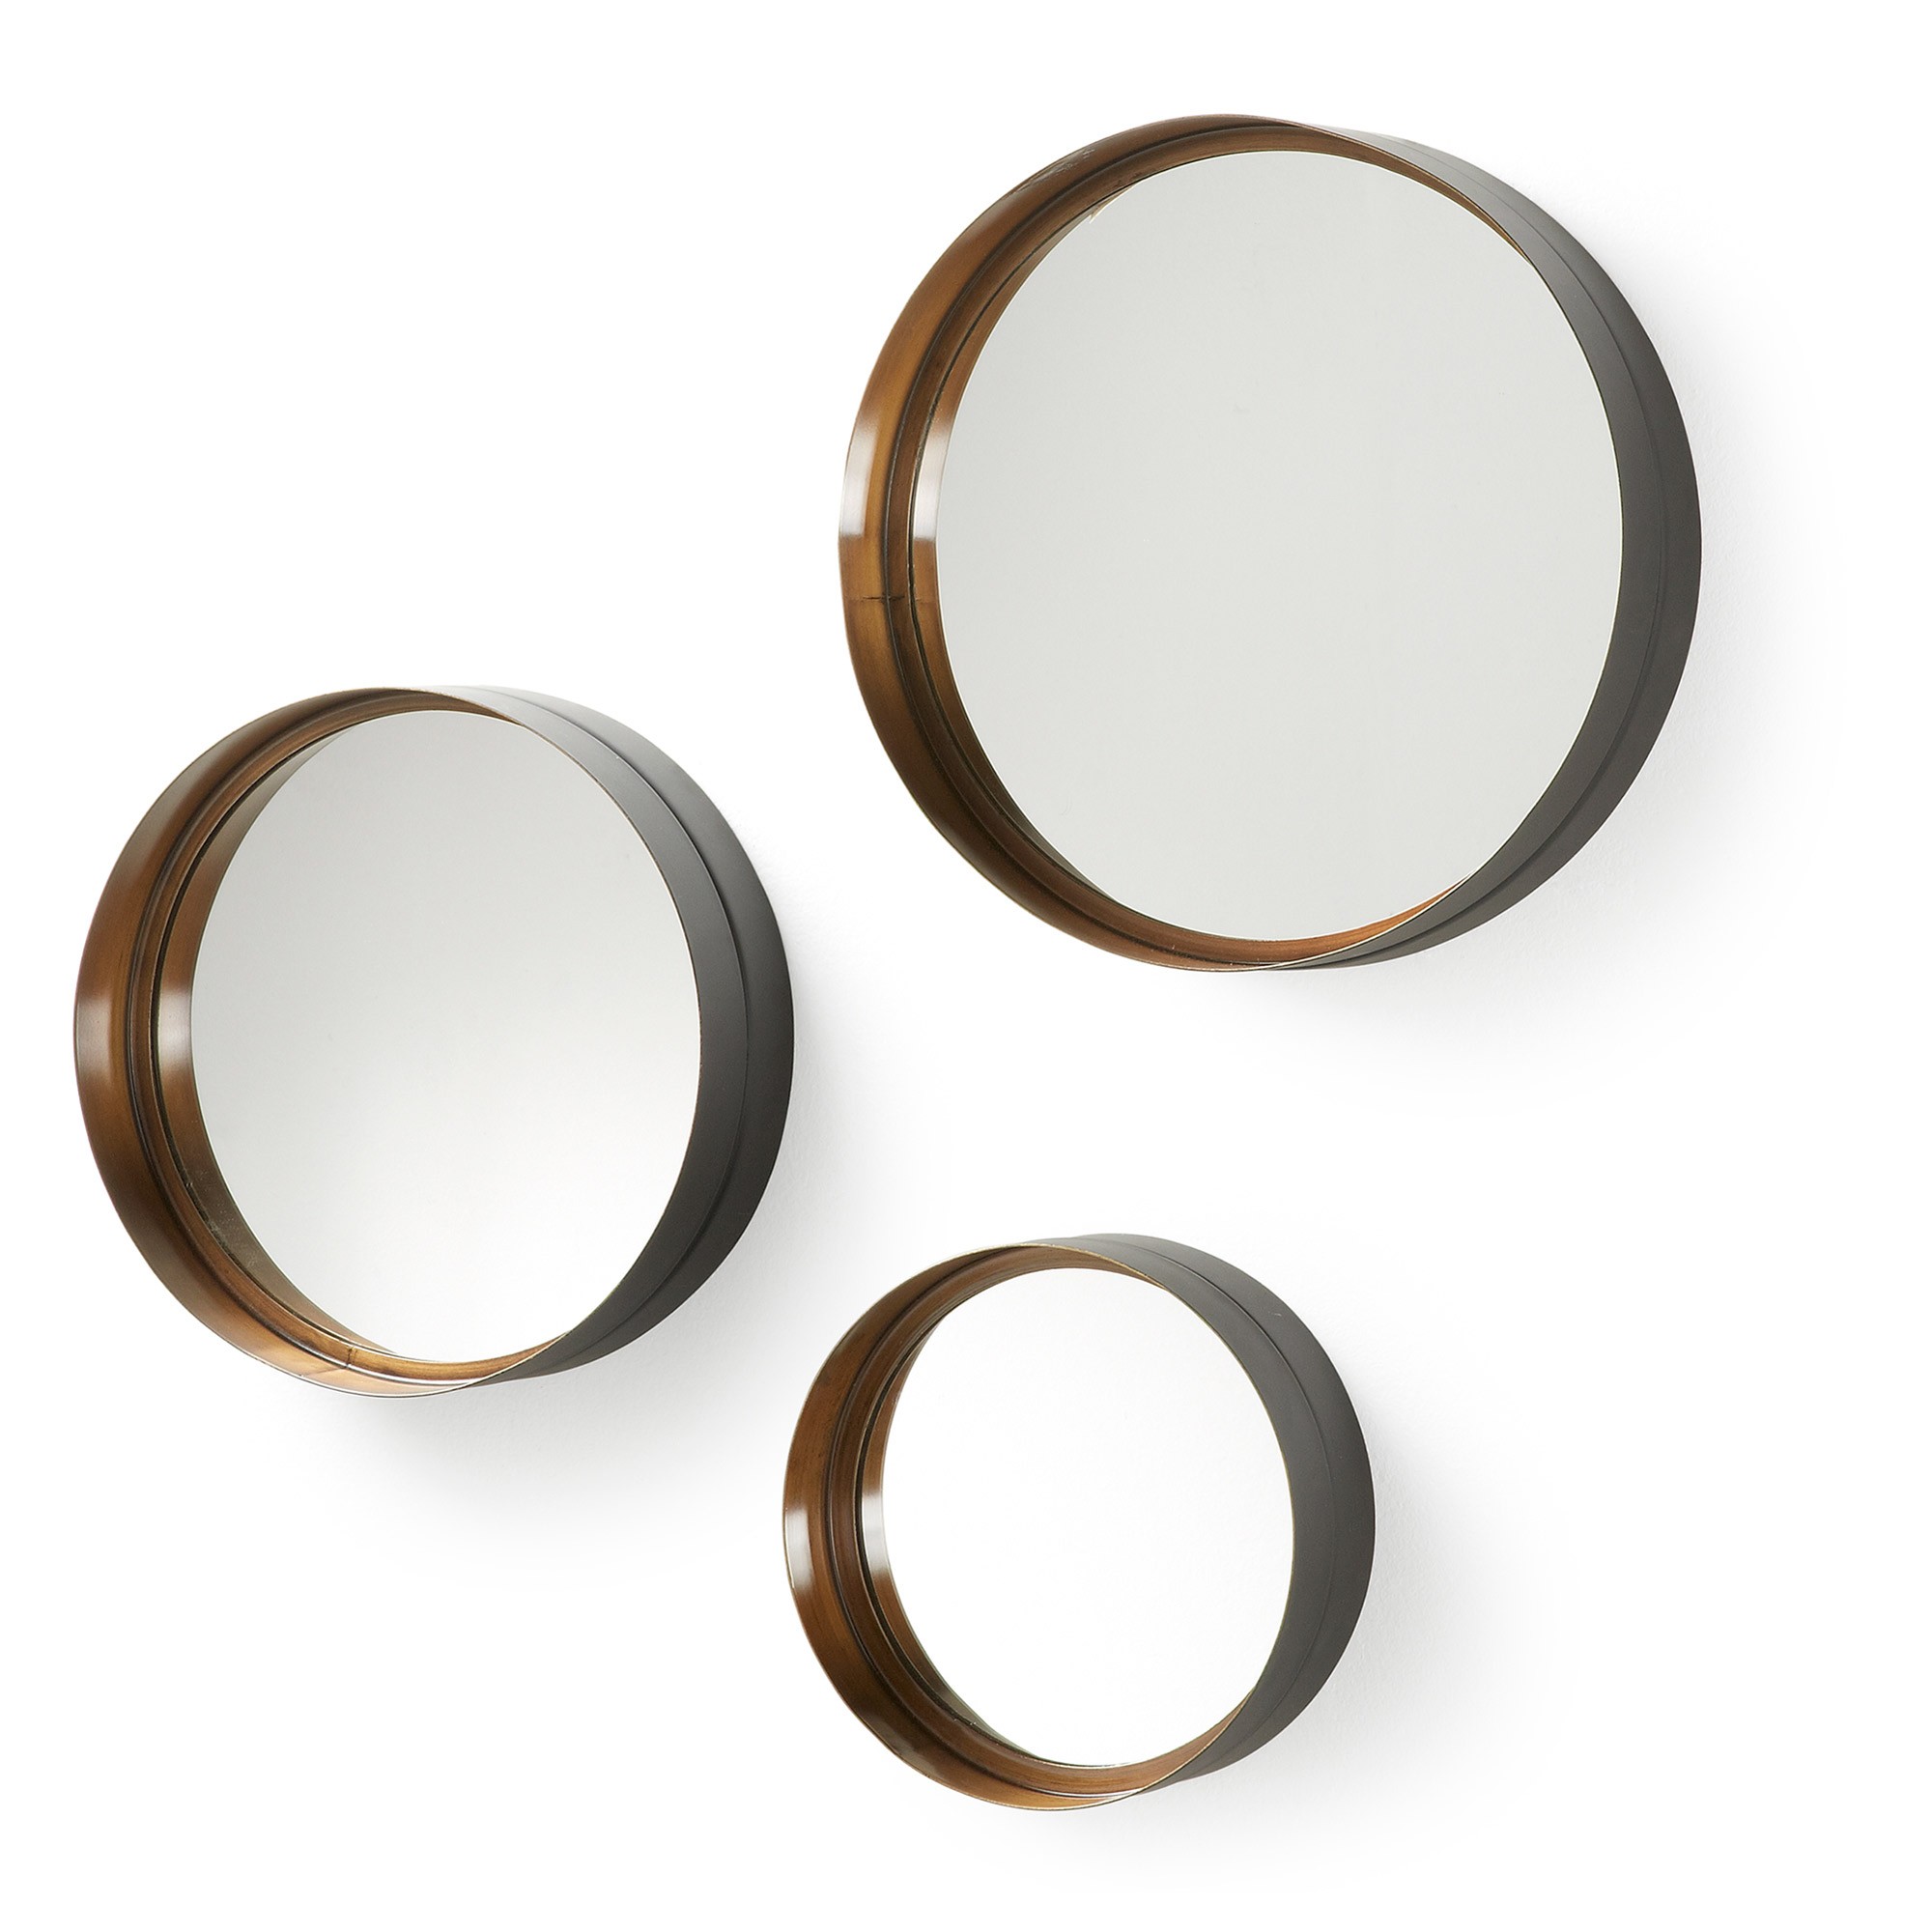 Купить комплект зеркал. Набор из 3х зеркал (set986). Зеркало la forma. Набор круглых зеркал разного диаметра. Зеркало с металлическим ободком.